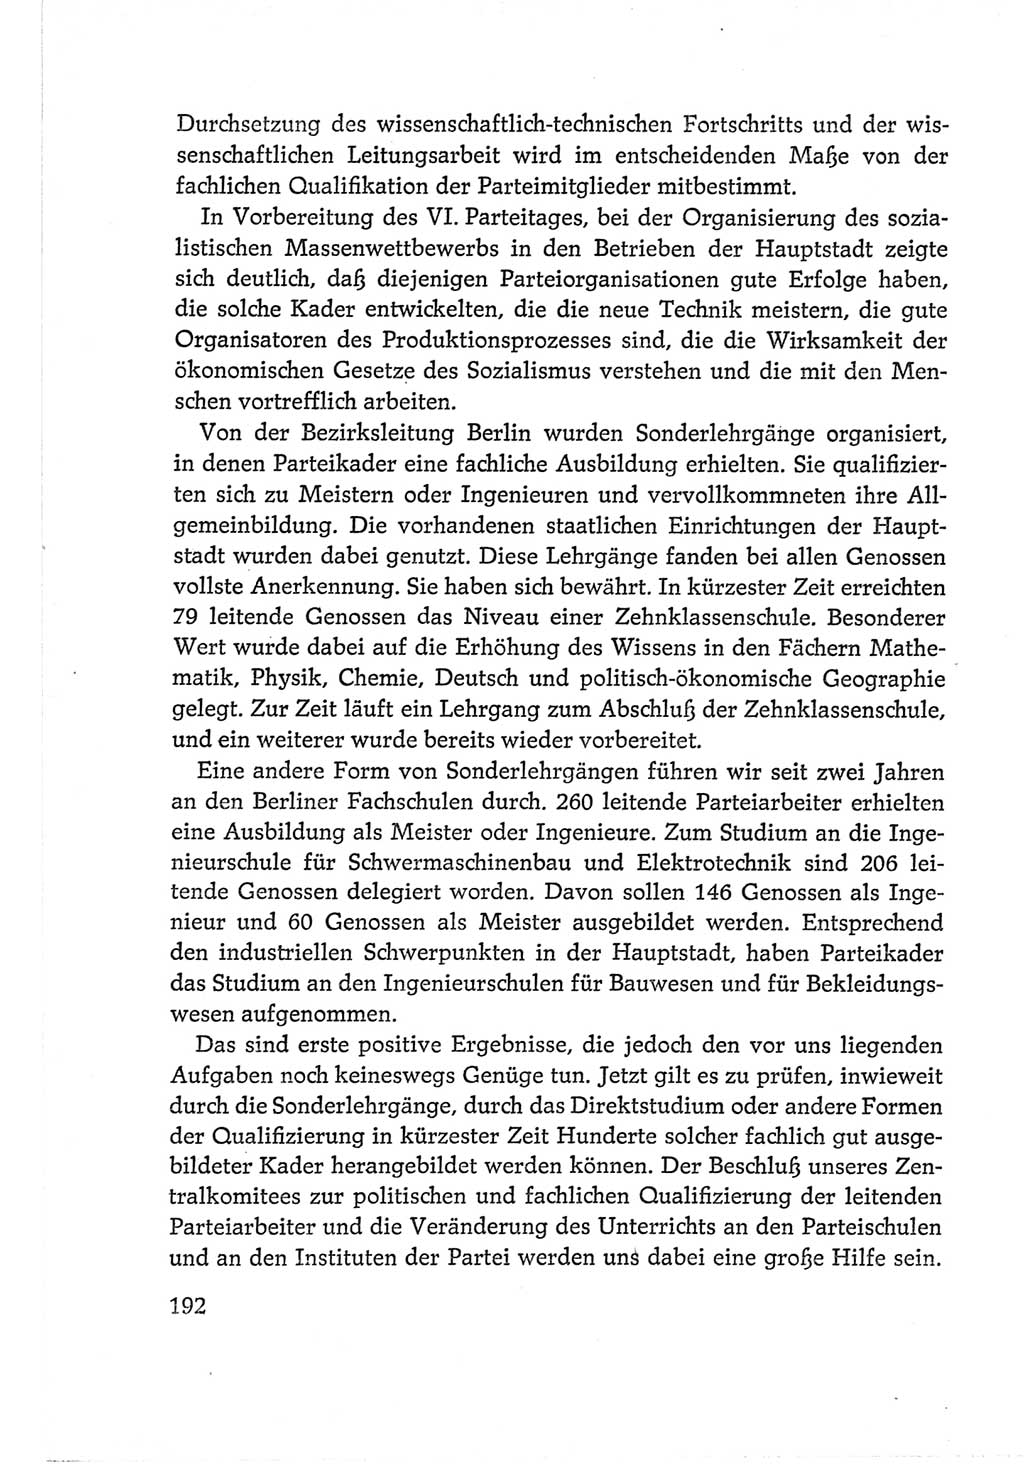 Protokoll der Verhandlungen des Ⅵ. Parteitages der Sozialistischen Einheitspartei Deutschlands (SED) [Deutsche Demokratische Republik (DDR)] 1963, Band Ⅱ, Seite 192 (Prot. Verh. Ⅵ. PT SED DDR 1963, Bd. Ⅱ, S. 192)